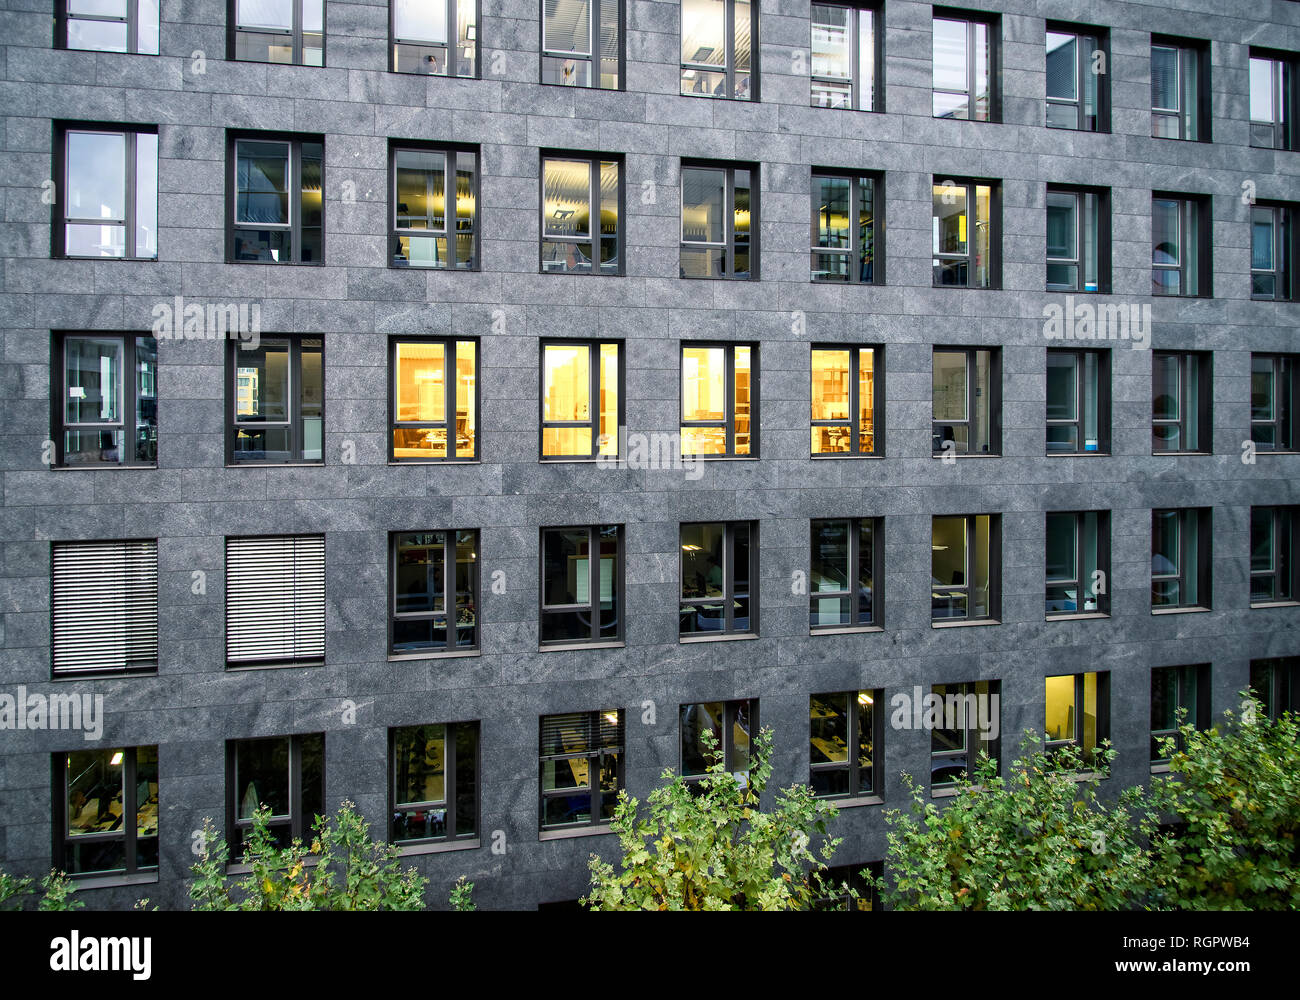 Fassade eines Bürogebäudes mit einigen hell erleuchteten Fenstern Stockfoto